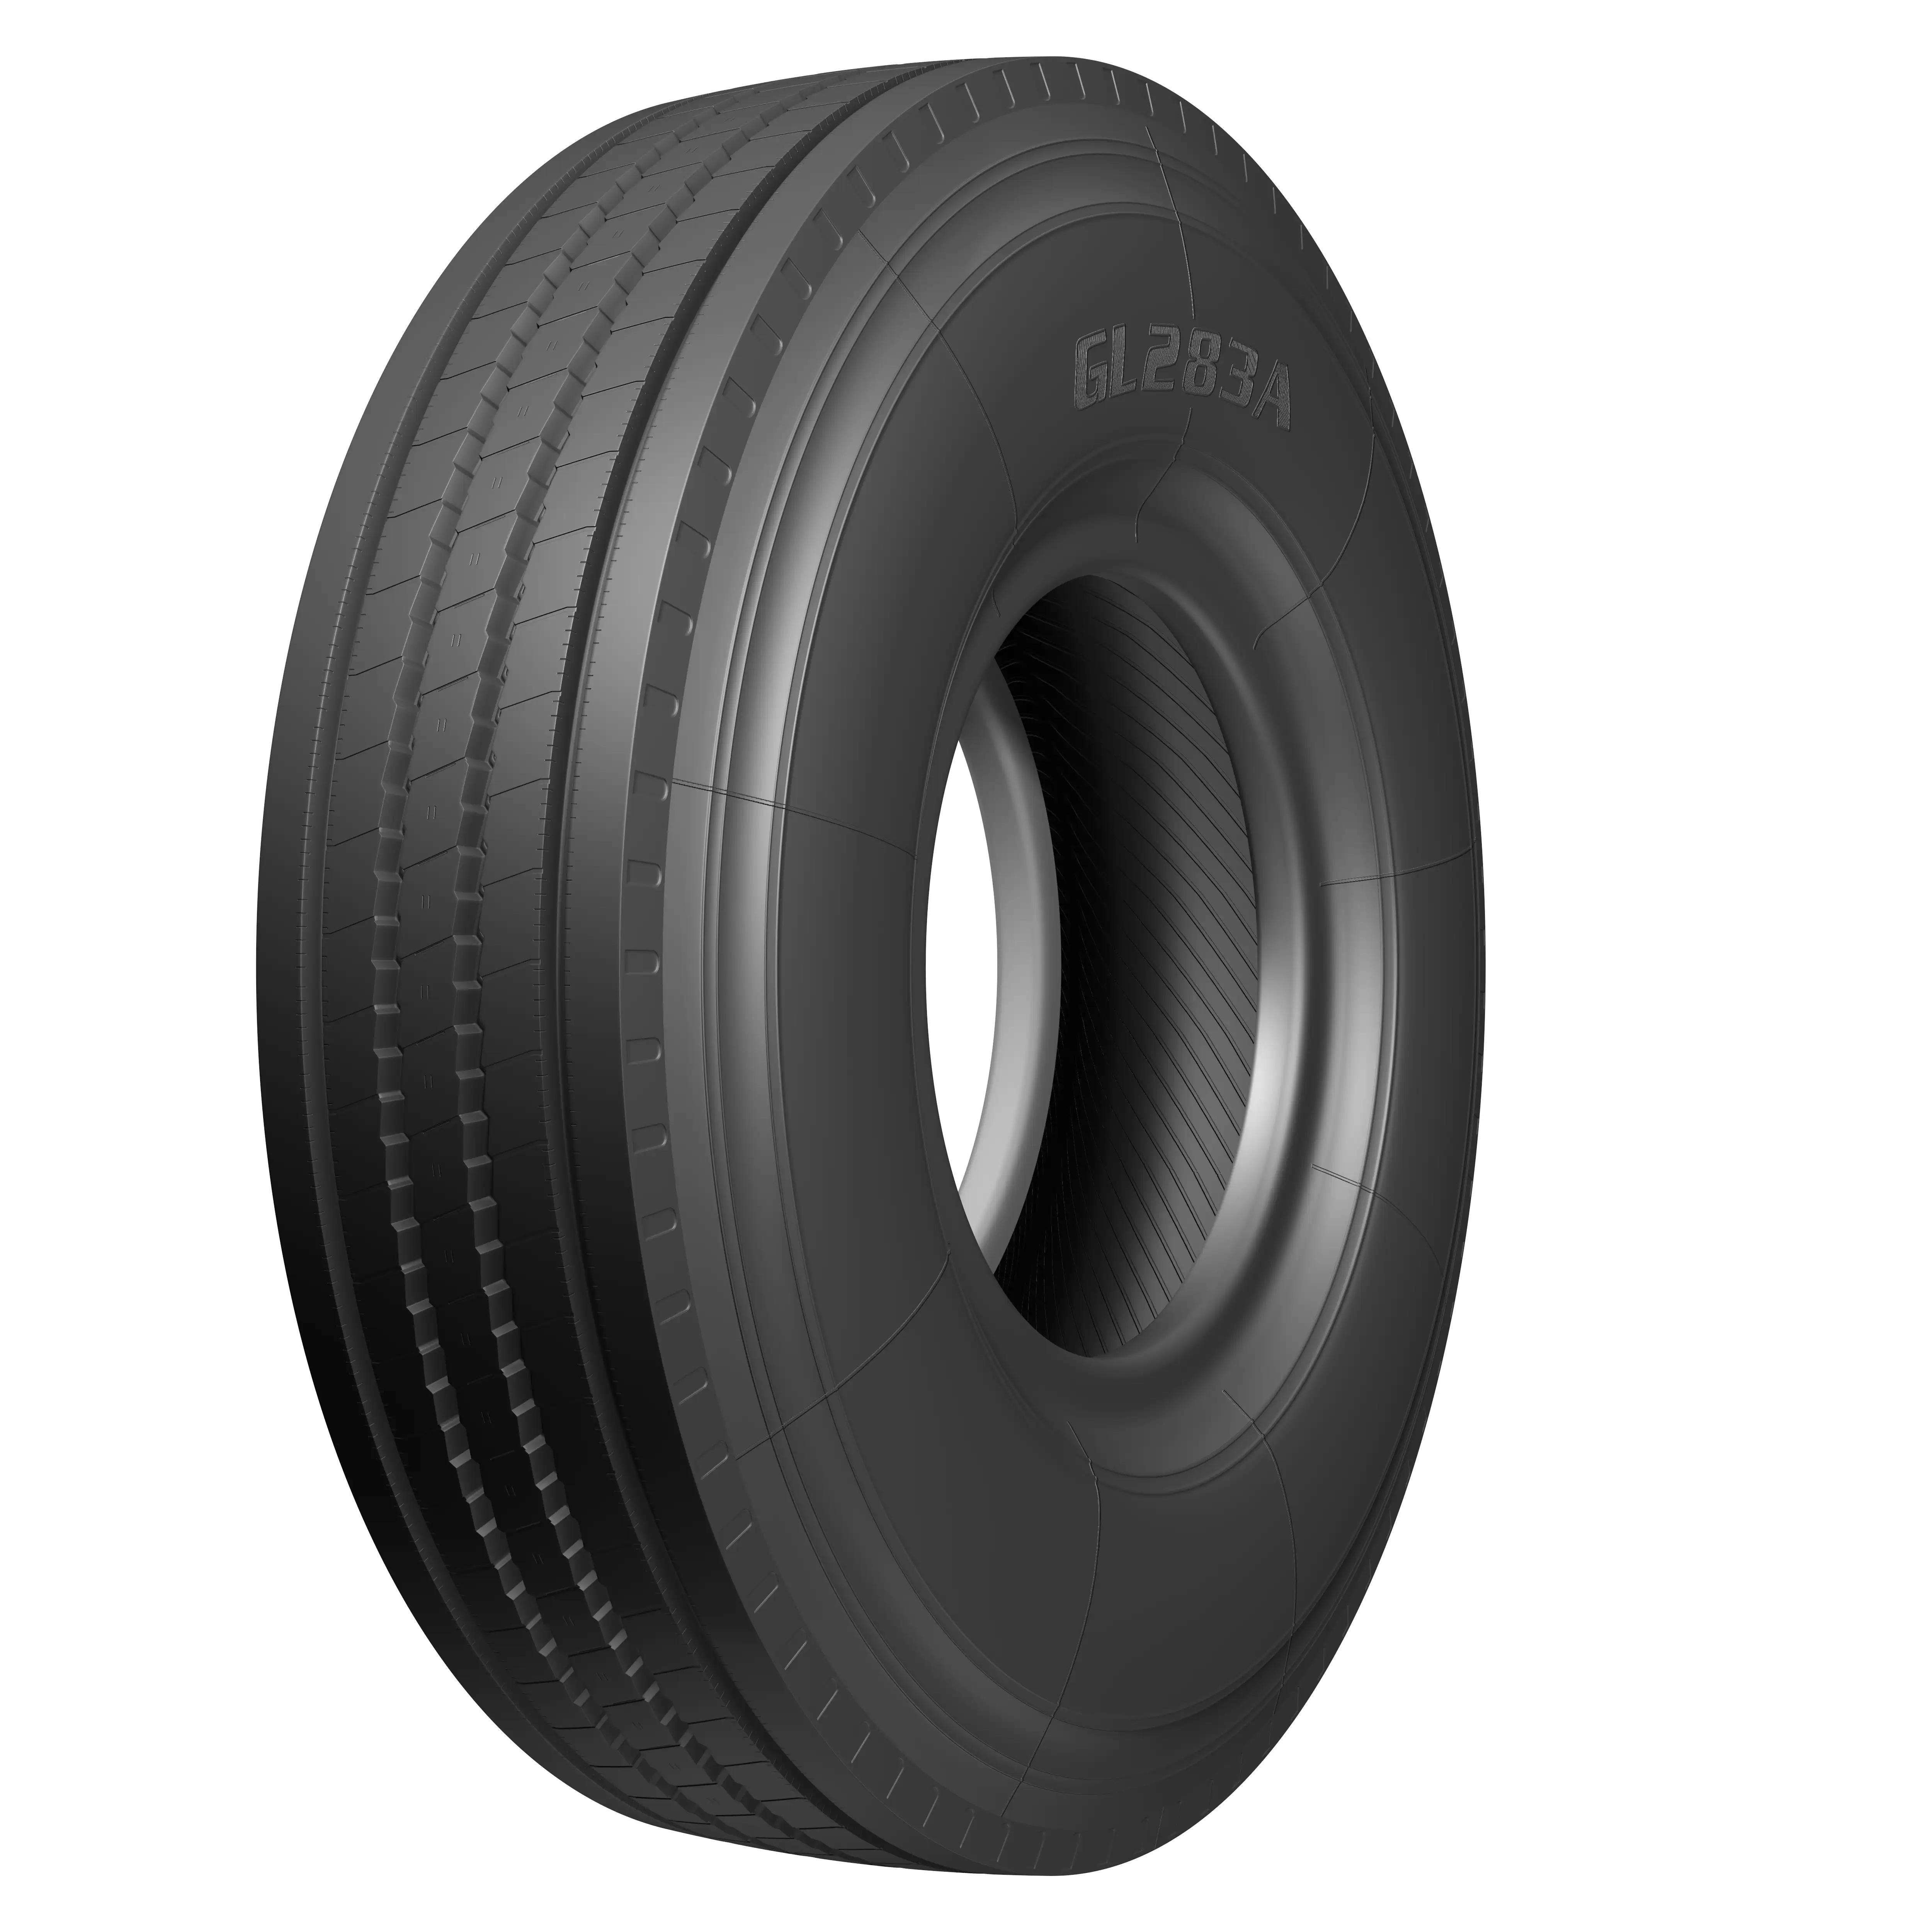 24.5 truck tires 11r24.5 valve stems for tubeless truck tires